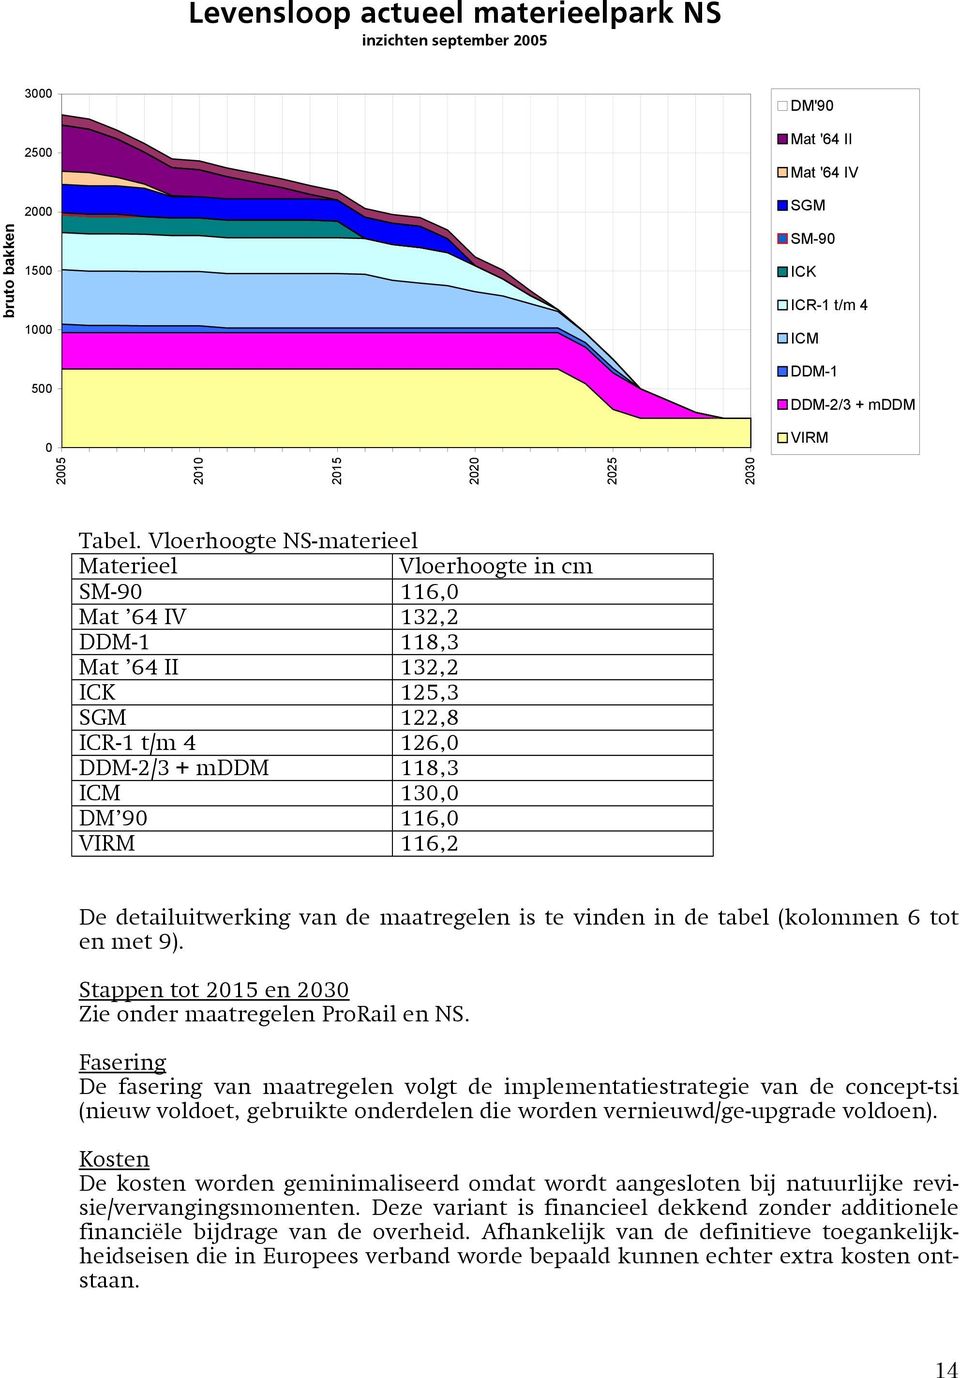 Vloerhoogte NS-materieel Materieel Vloerhoogte in cm SM-90 116,0 Mat 64 IV 132,2 DDM-1 118,3 Mat 64 II 132,2 ICK 125,3 SGM 122,8 ICR-1 t/m 4 126,0 DDM-2/3 + mddm 118,3 ICM 130,0 DM 90 116,0 VIRM